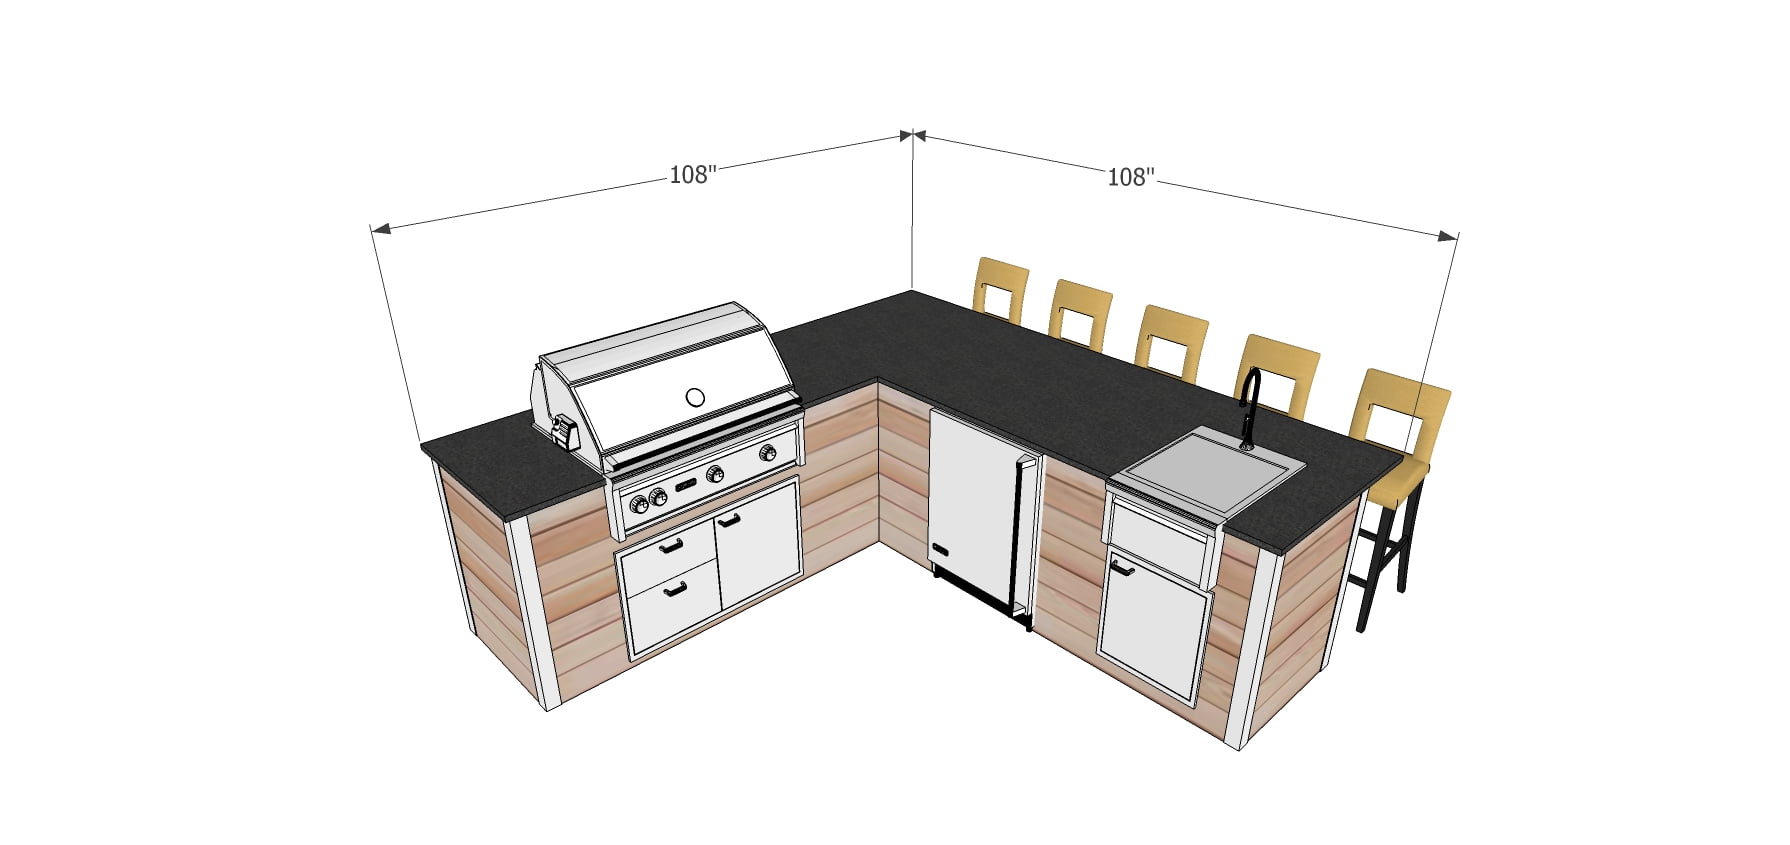 Outdoor kitchen layout